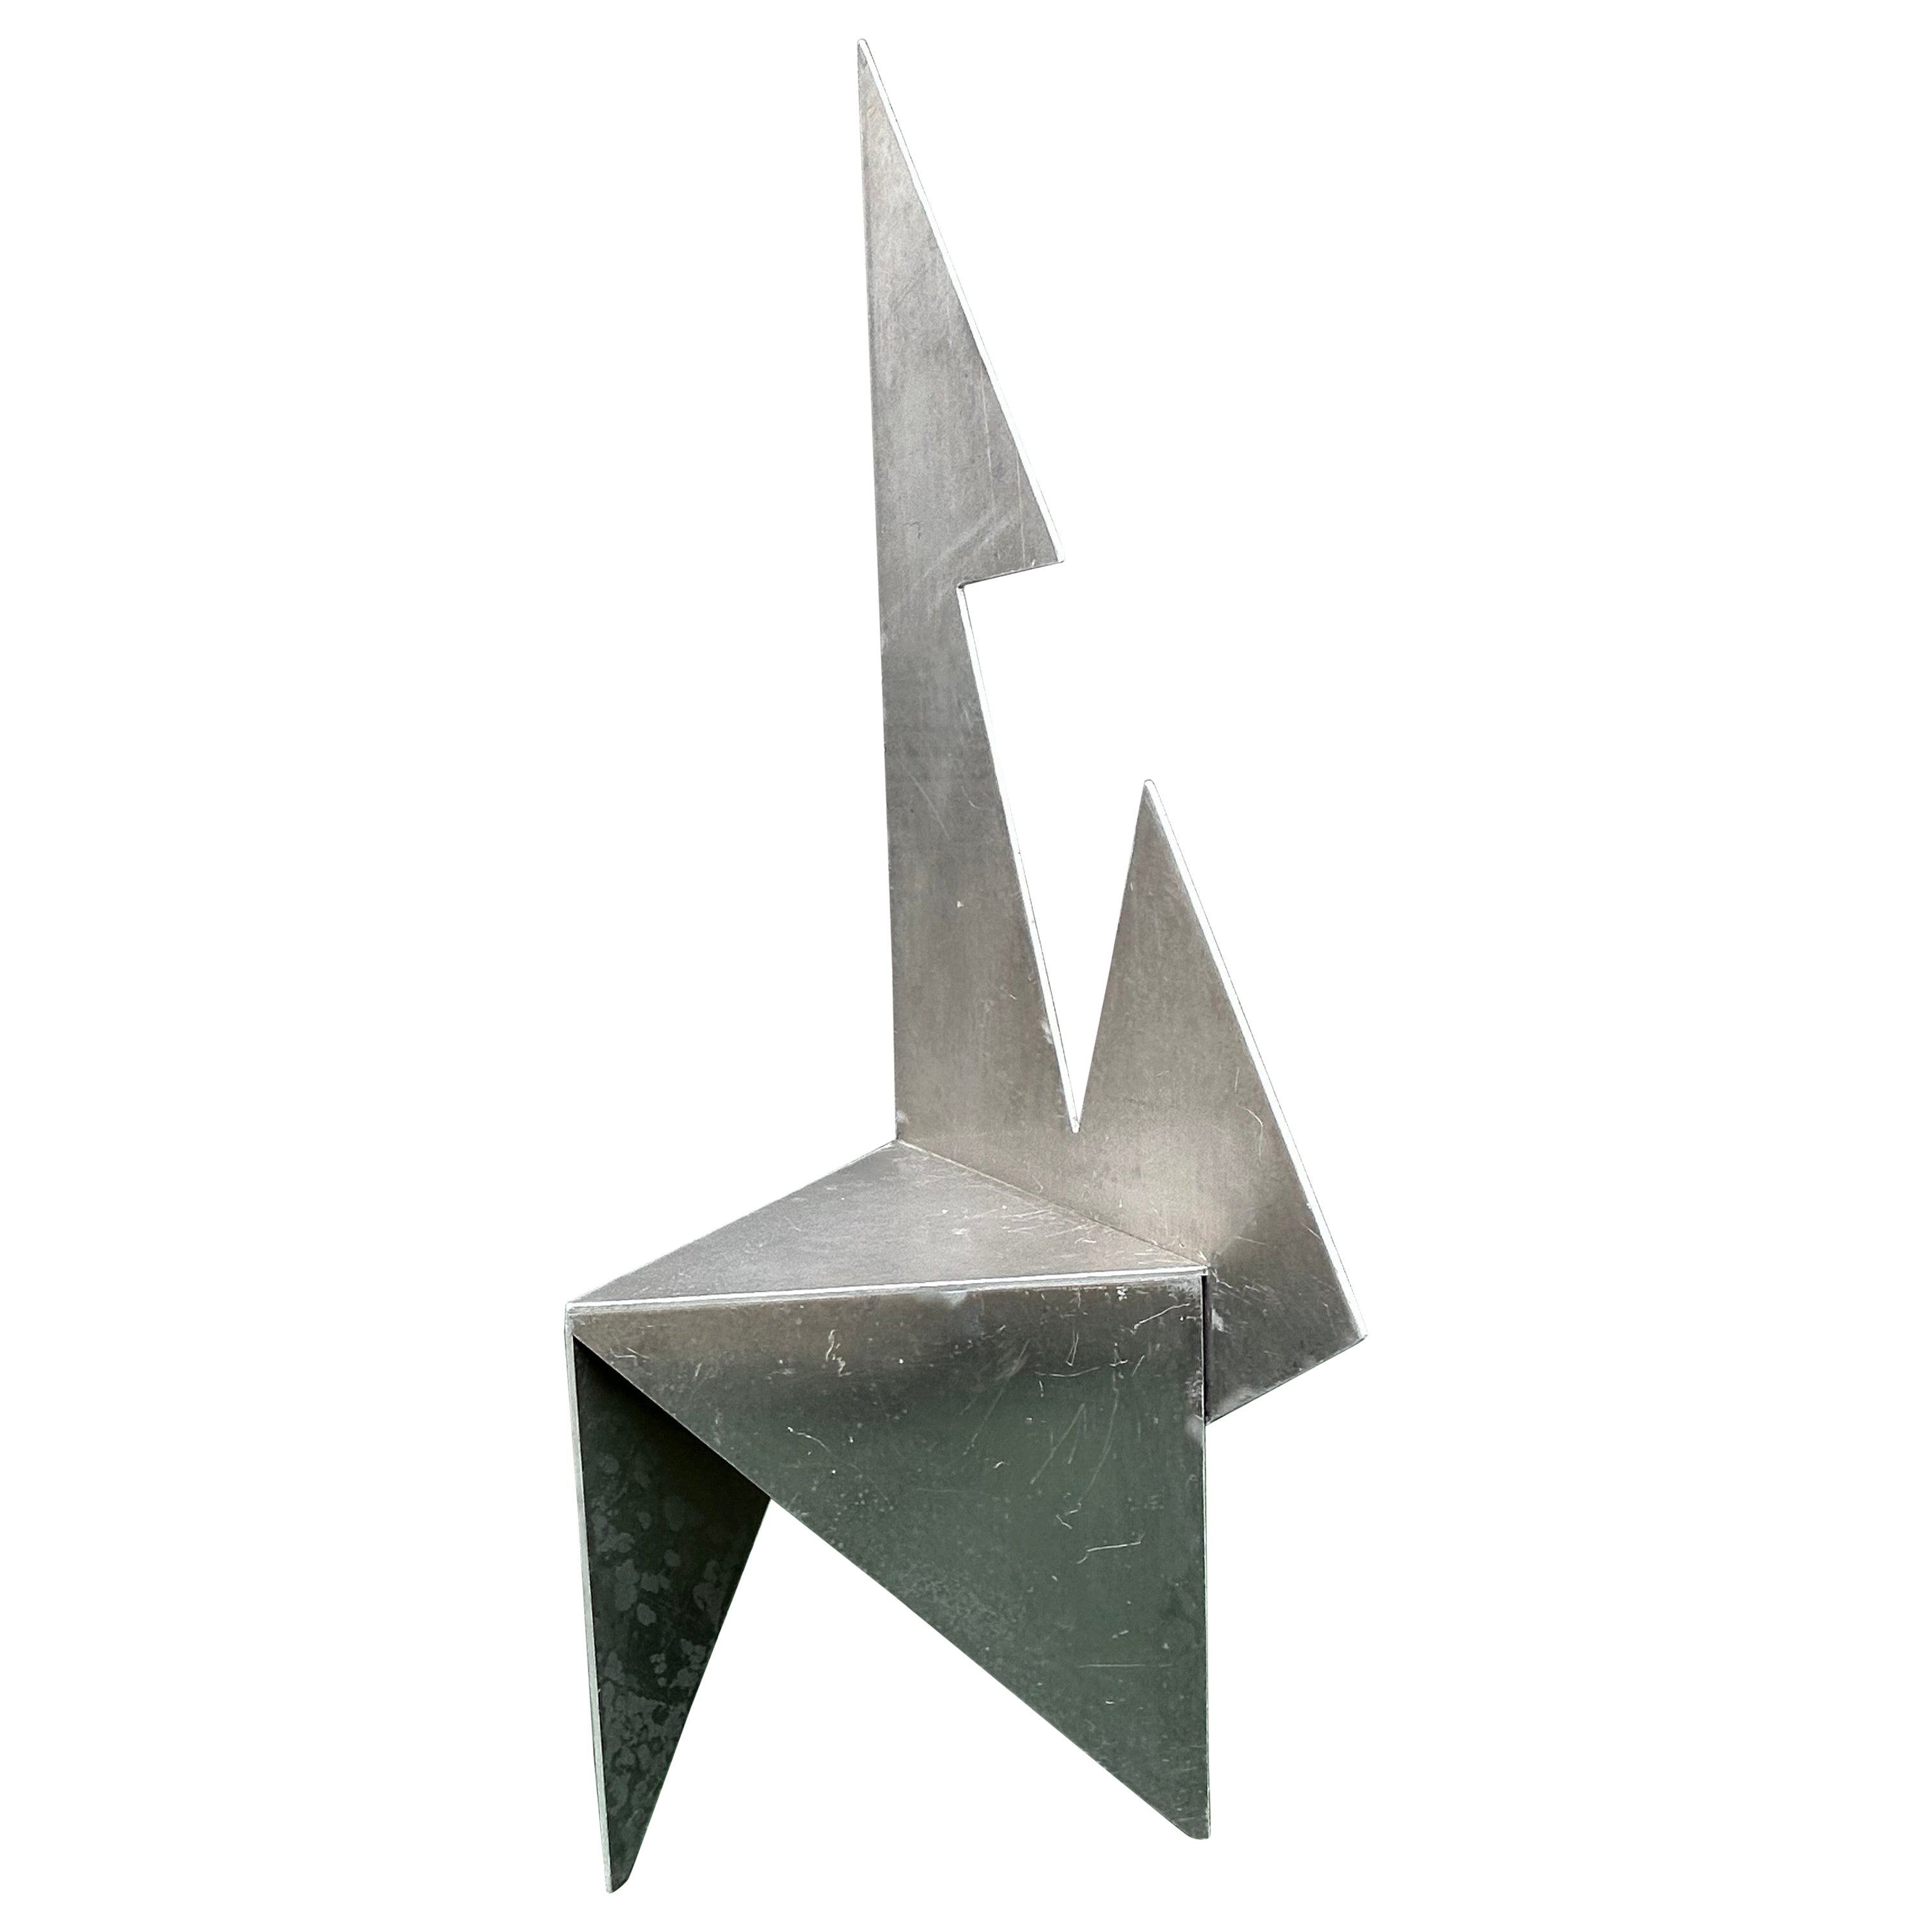 Modern Art Sculpture Chair